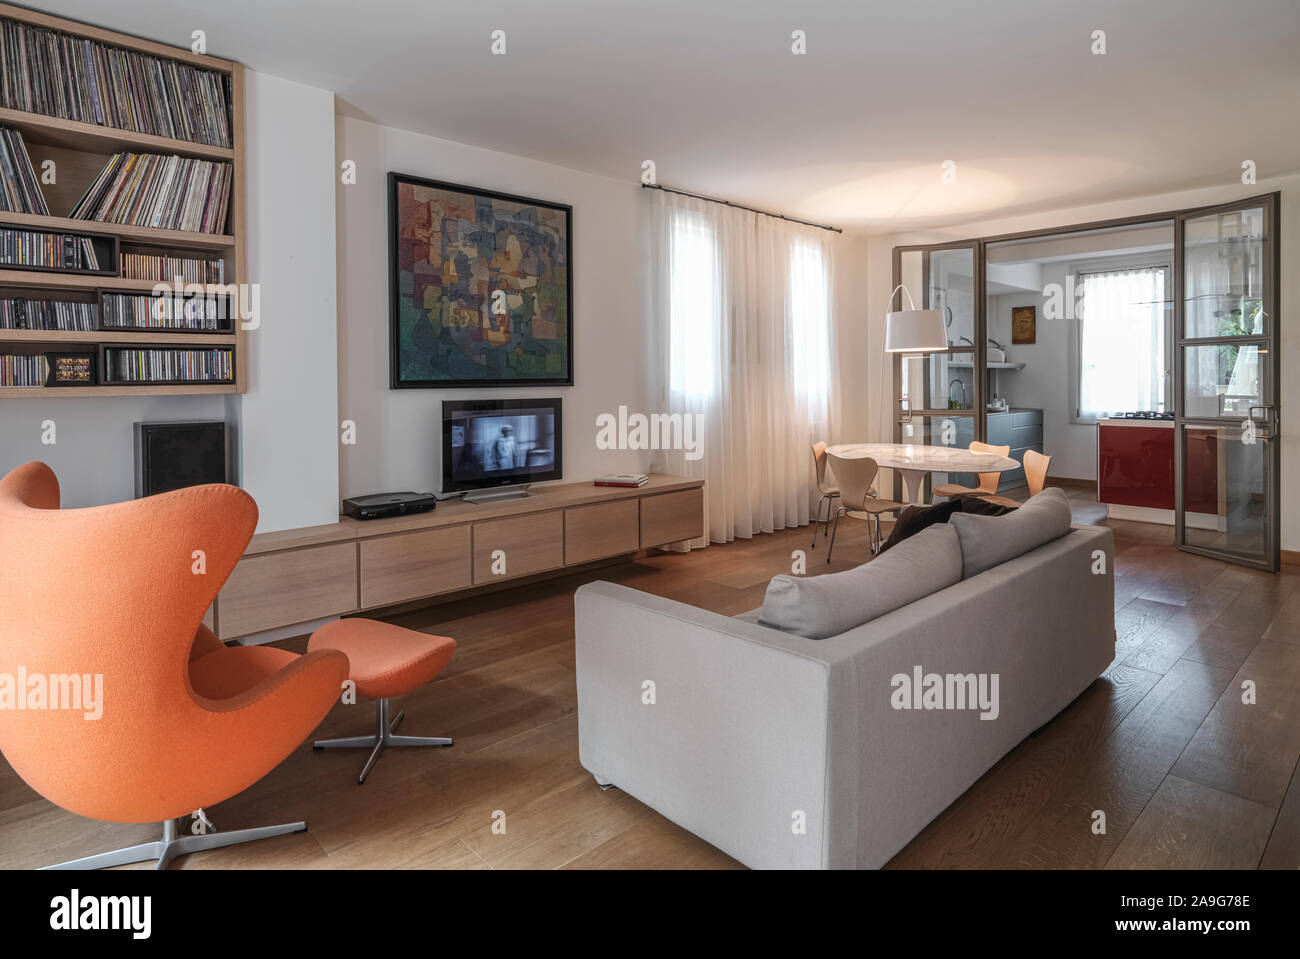 Immagine interna di un moderno soggiorno in primo piano la poltrona e il divano in tessuto di fronte alla TV in background, dopo la porta di vetro Foto Stock